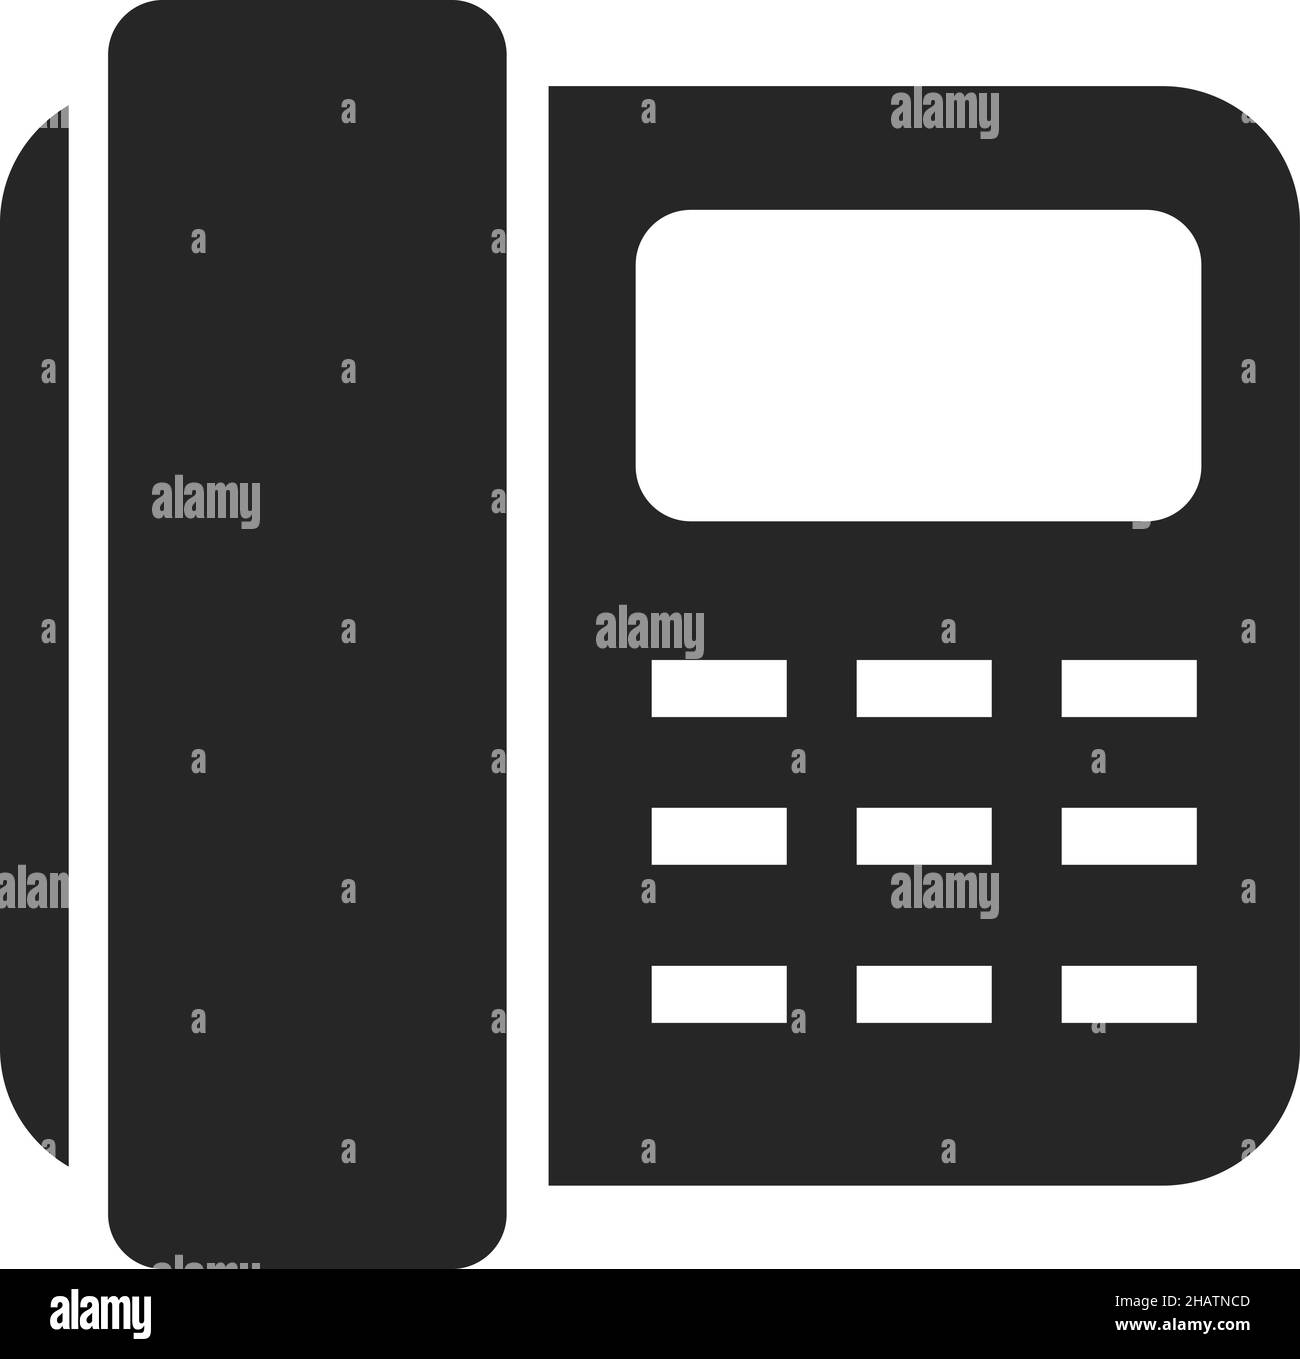 Pulsante icona telefono. Simbolo del telefono vintage in stile semplice Illustrazione Vettoriale